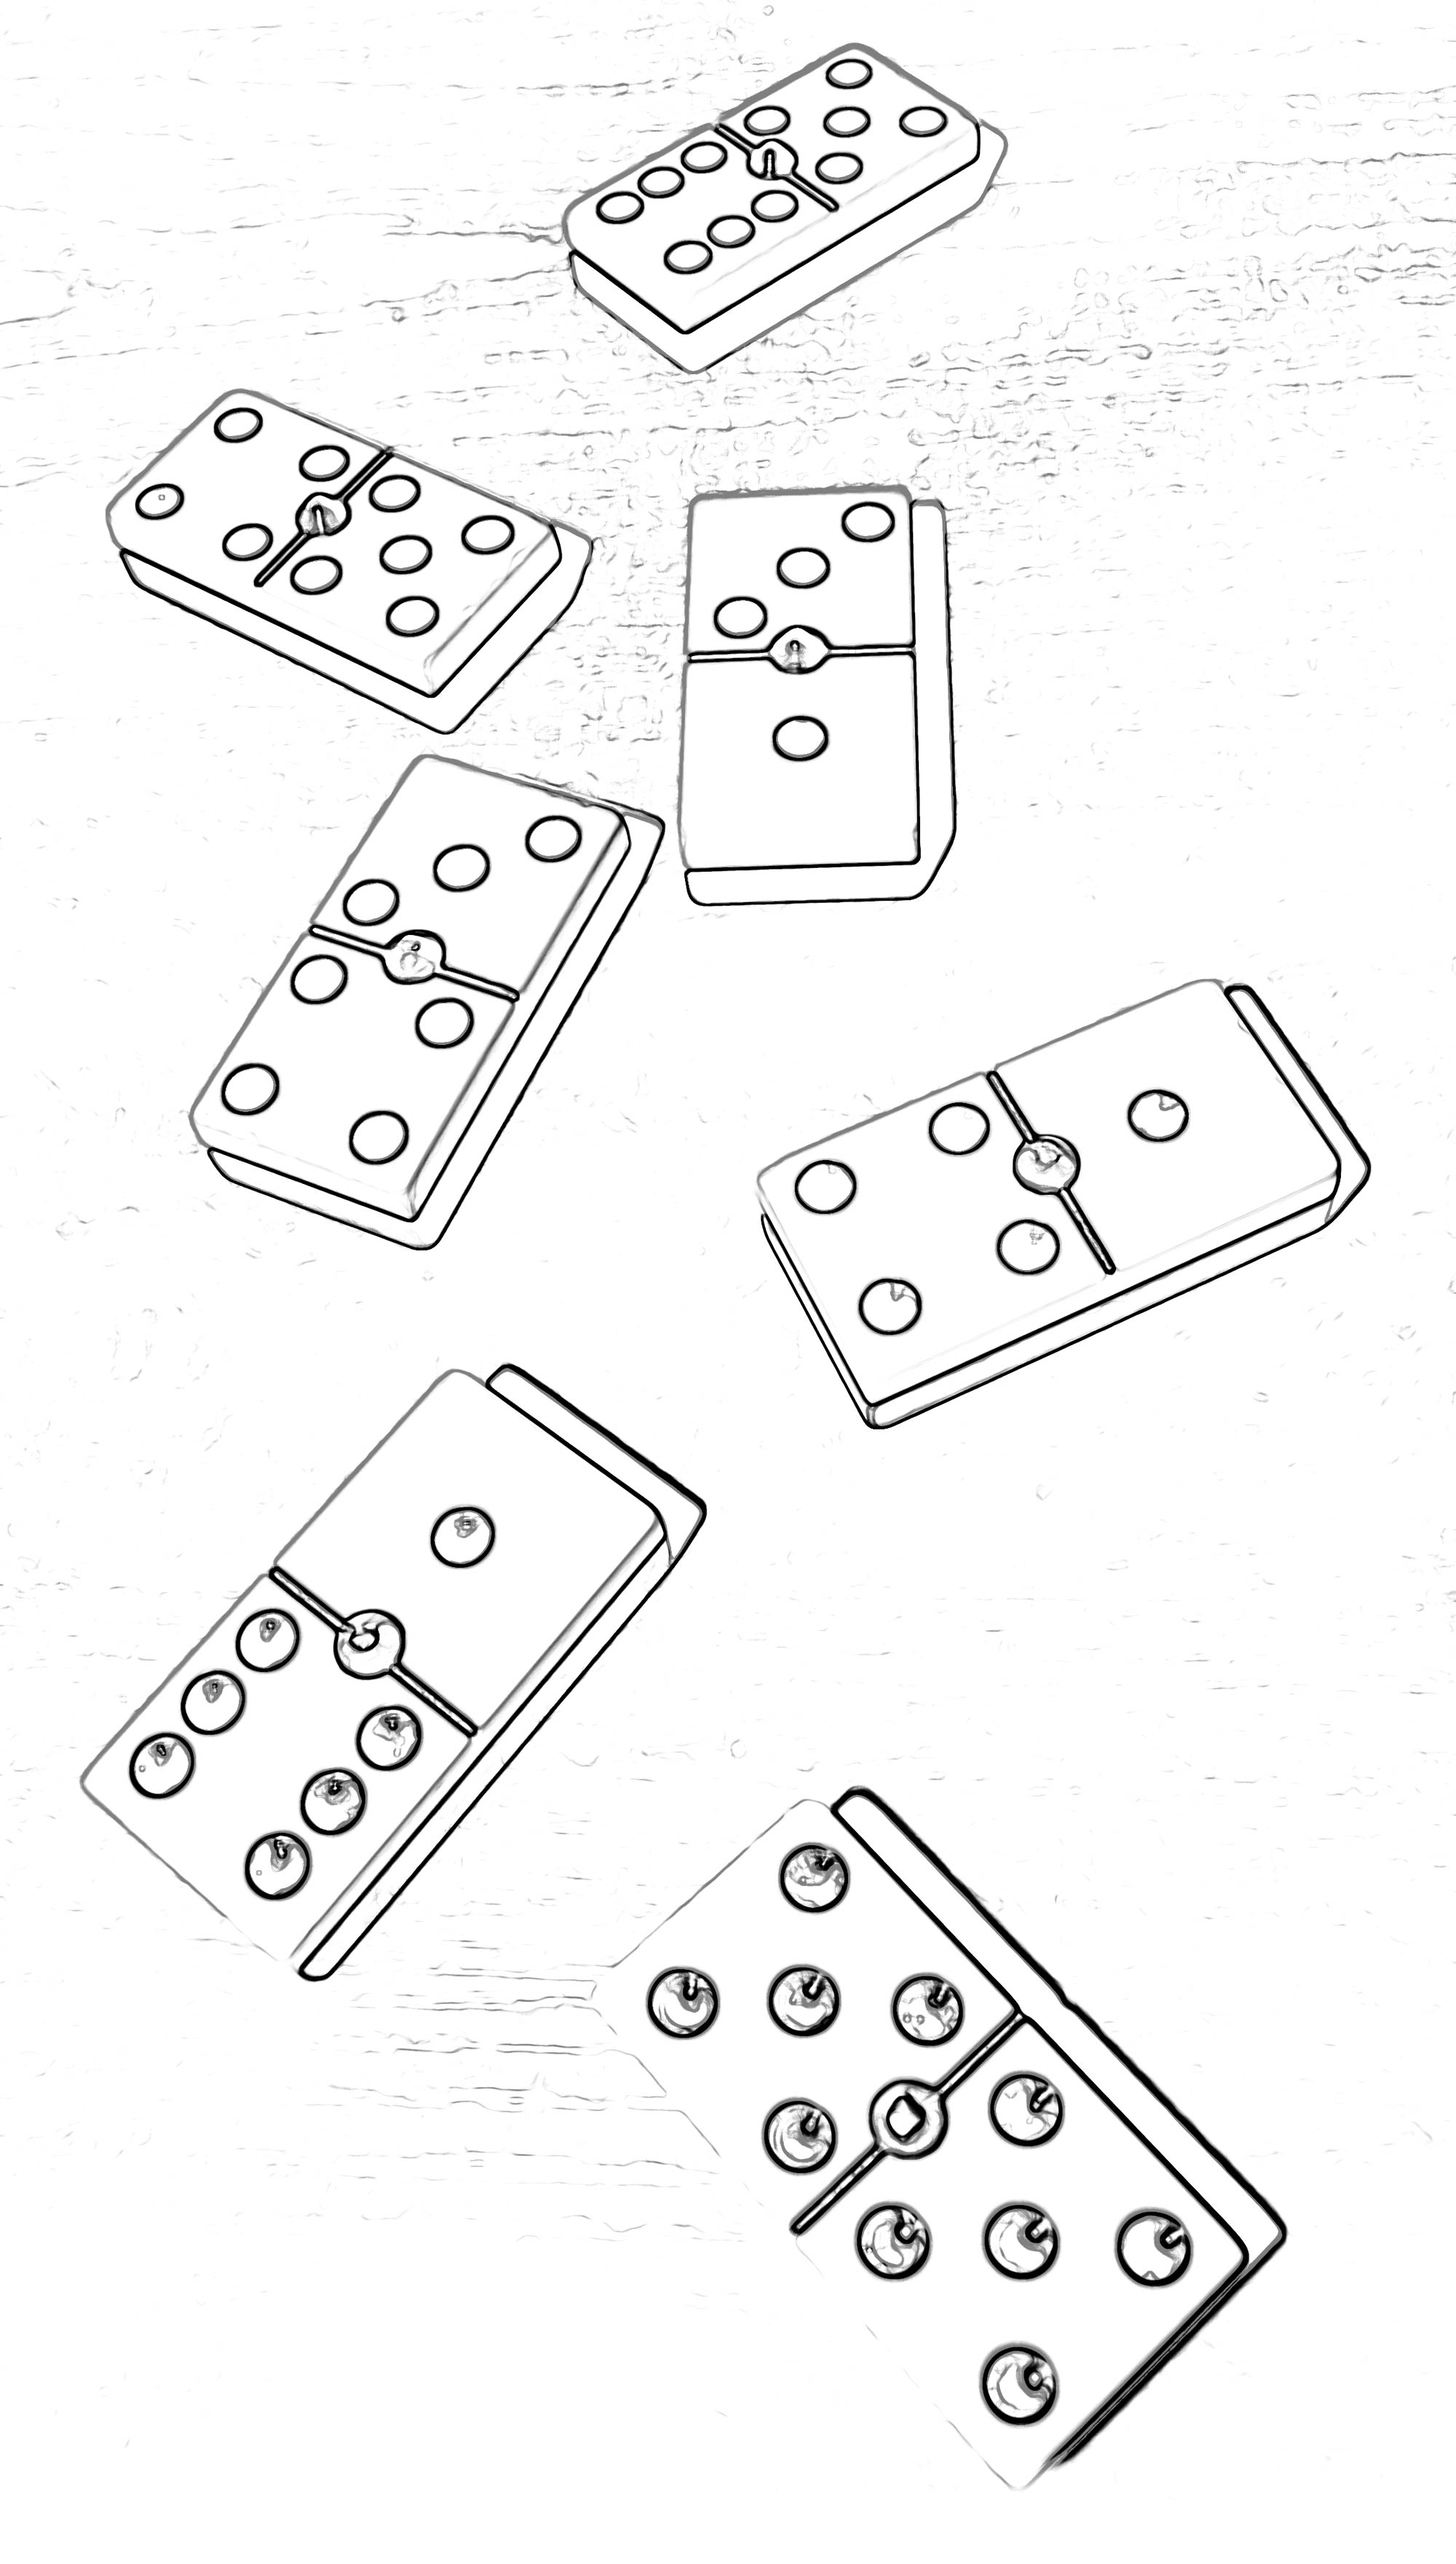 Ilustración gratis - Fichas del dominó